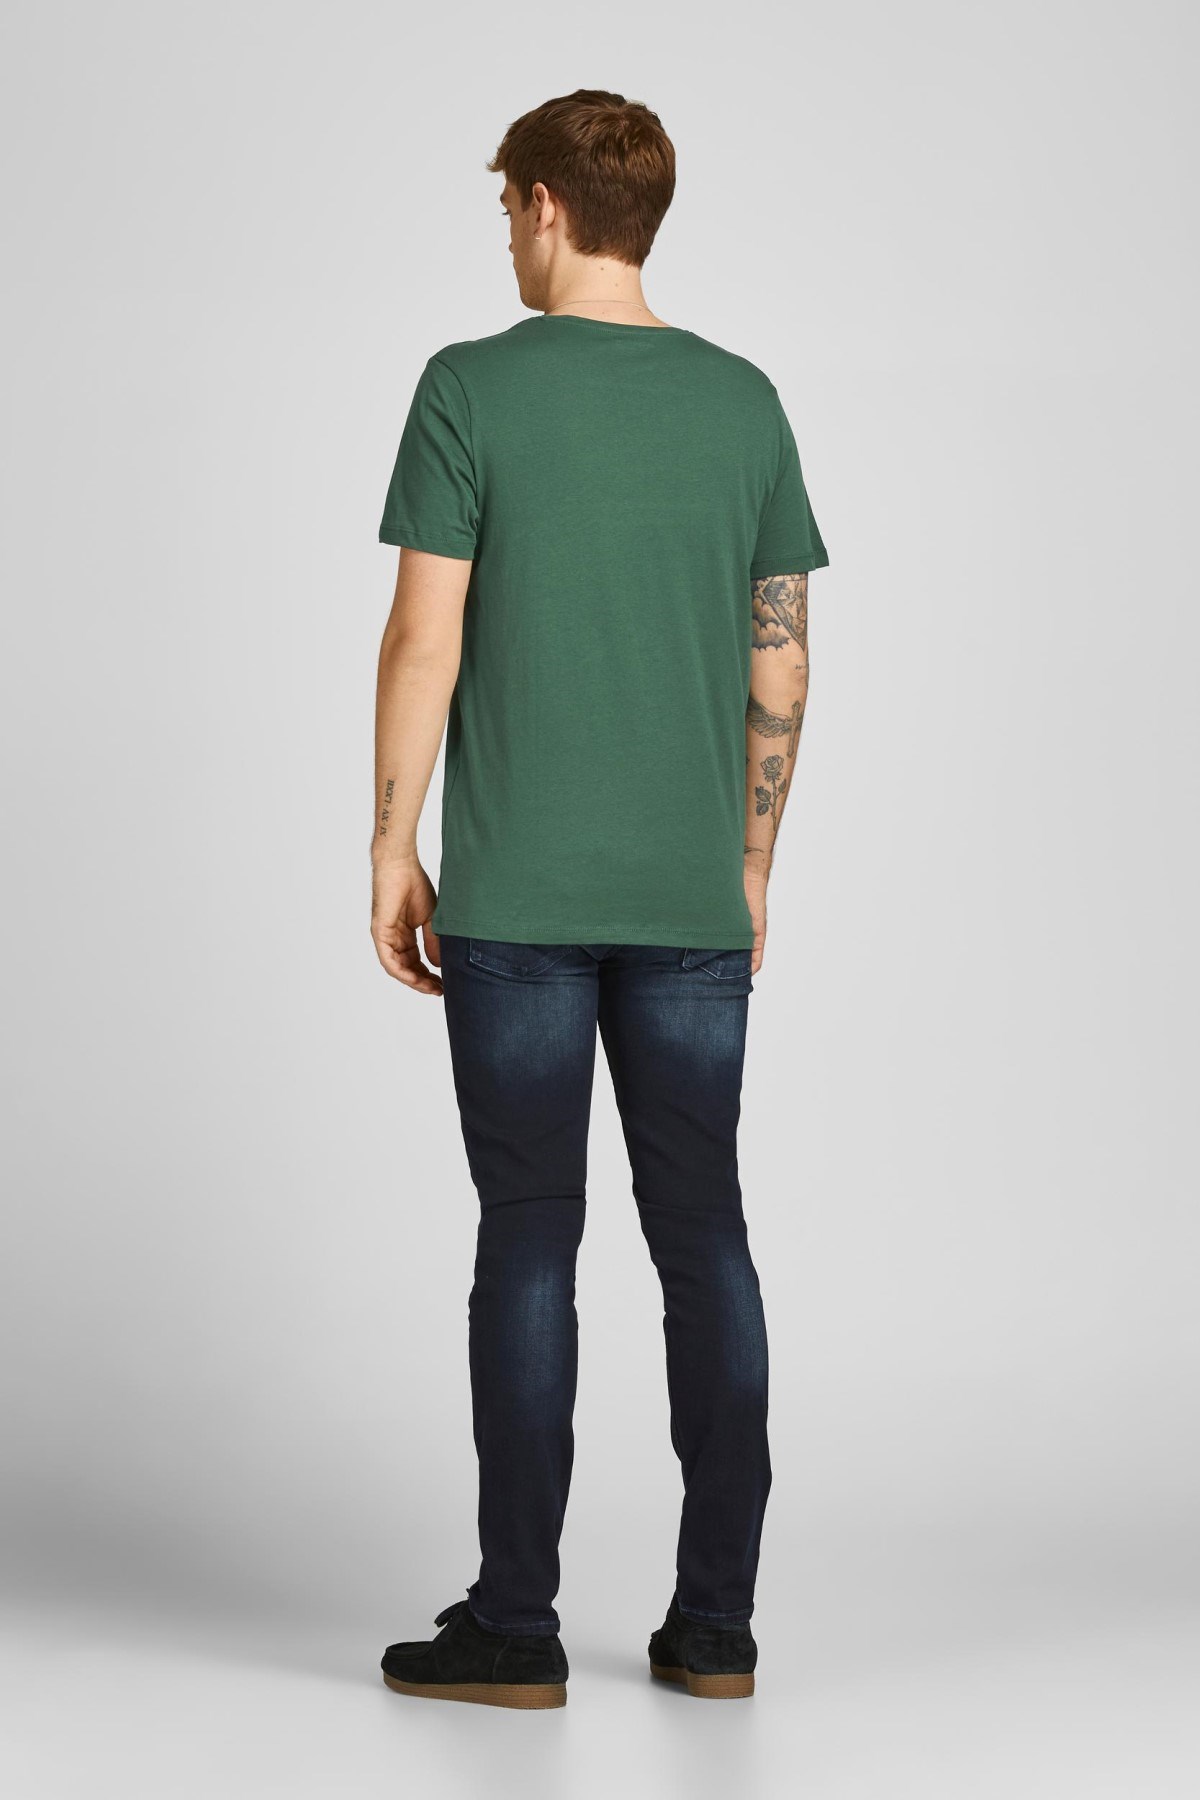 Jack Jones Erkek T-Shirt 12205684 Trekking Green